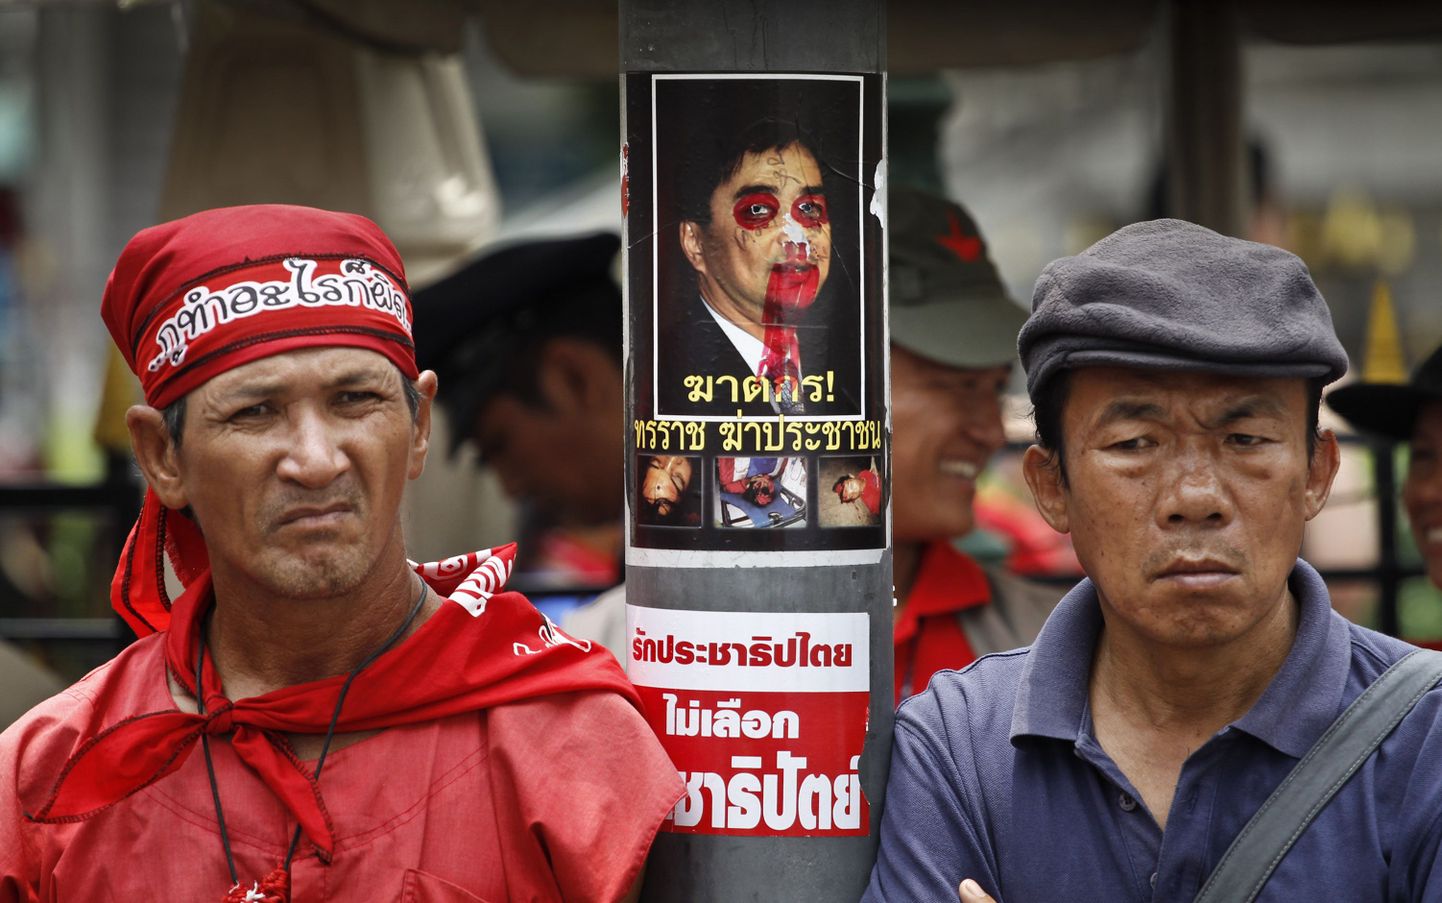 Tai valitsusvastased meeleavaldajad peaministrit solvava portree kõrval seismas.